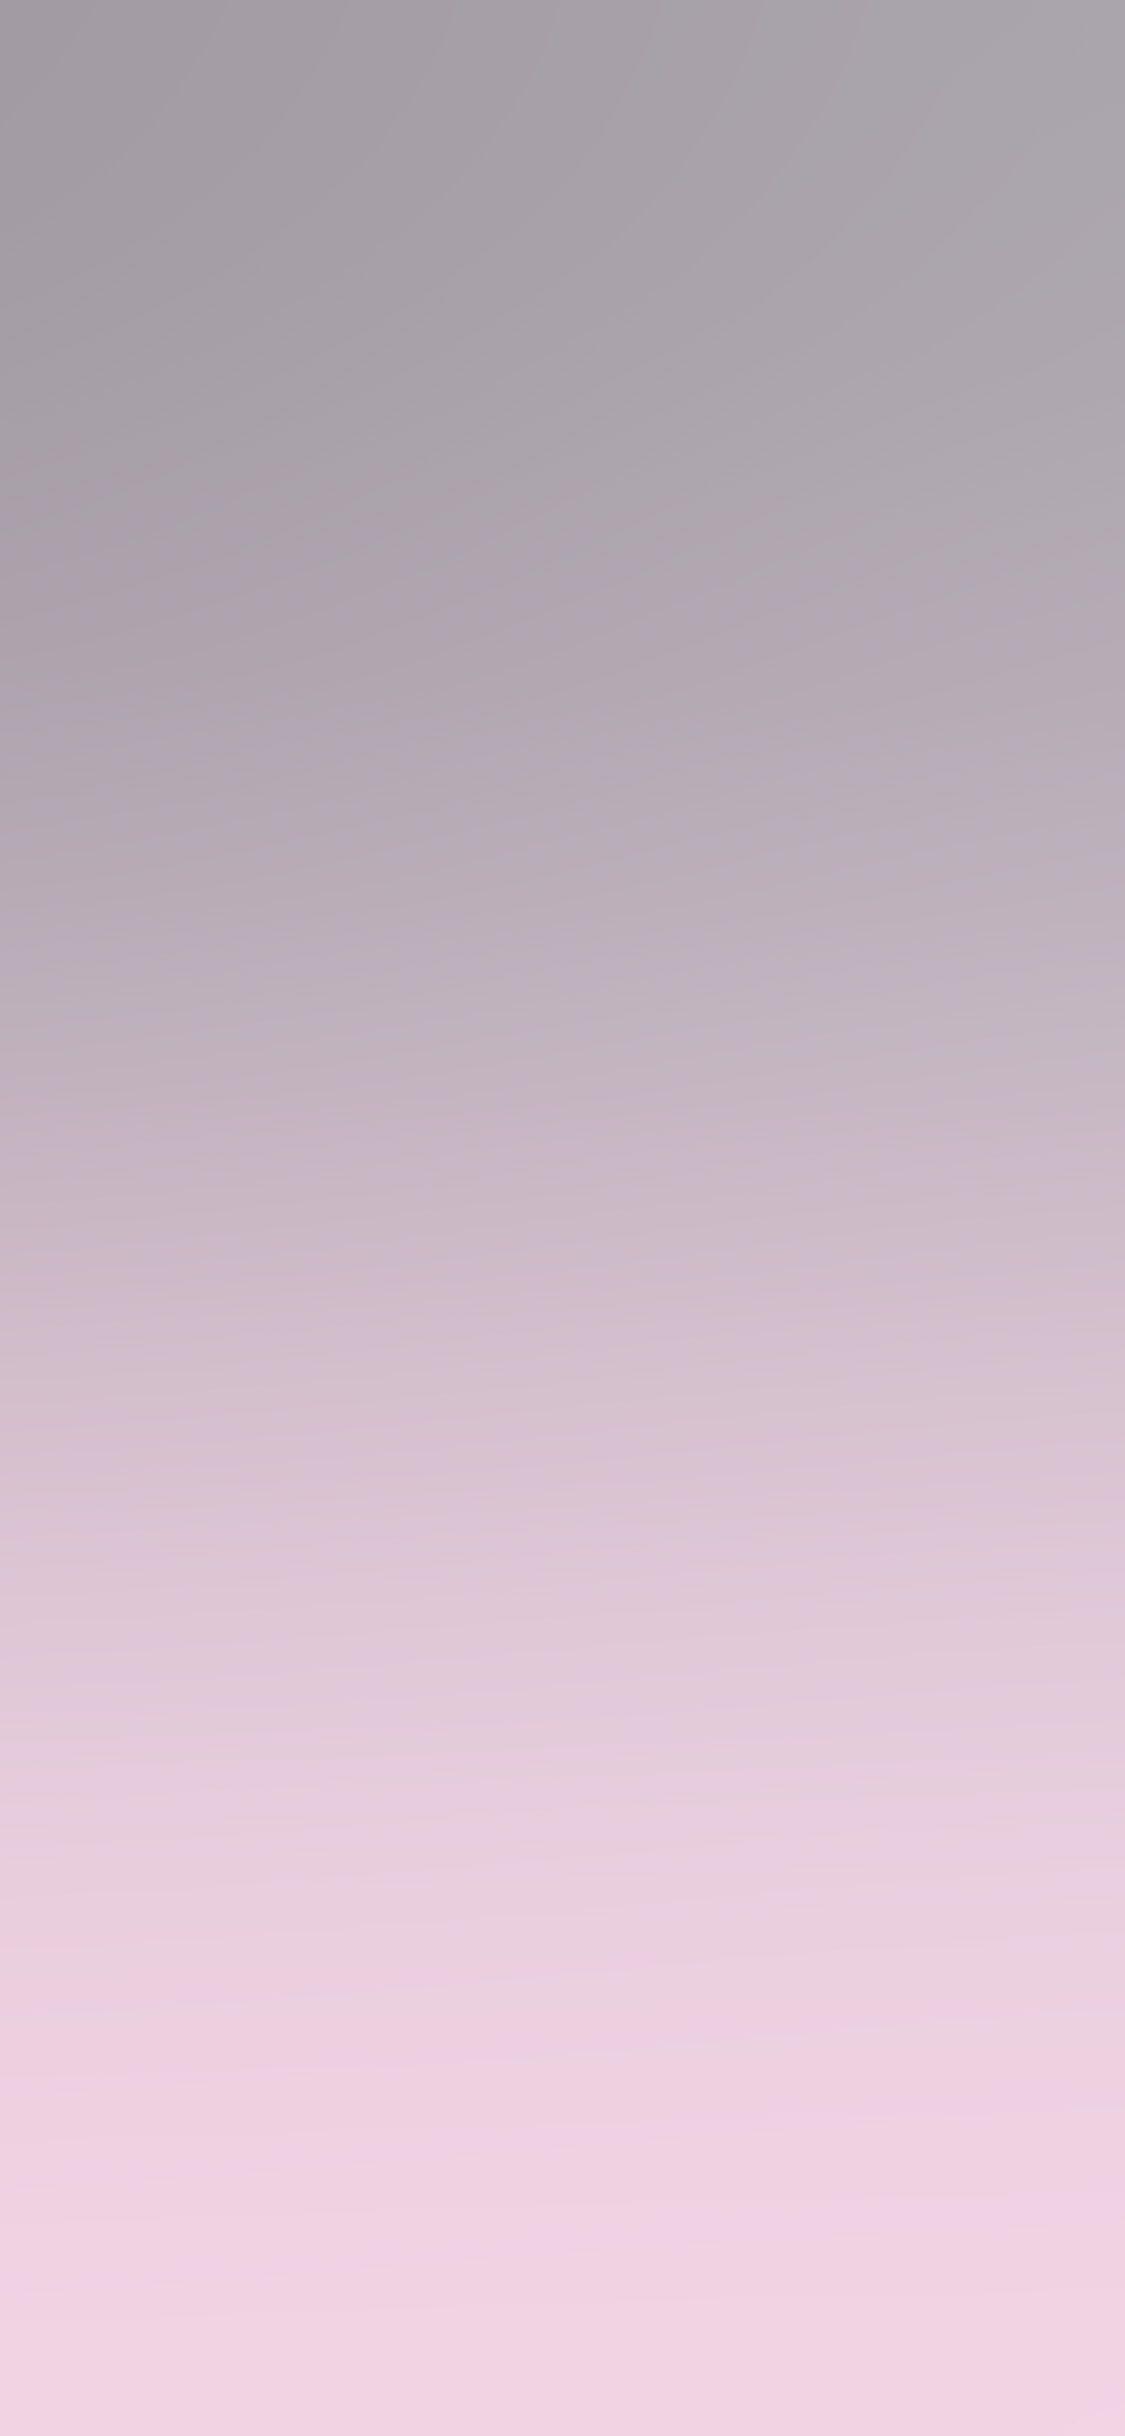 Hình nền iPhone X 1125x2436.  màu tím nhạt dịu